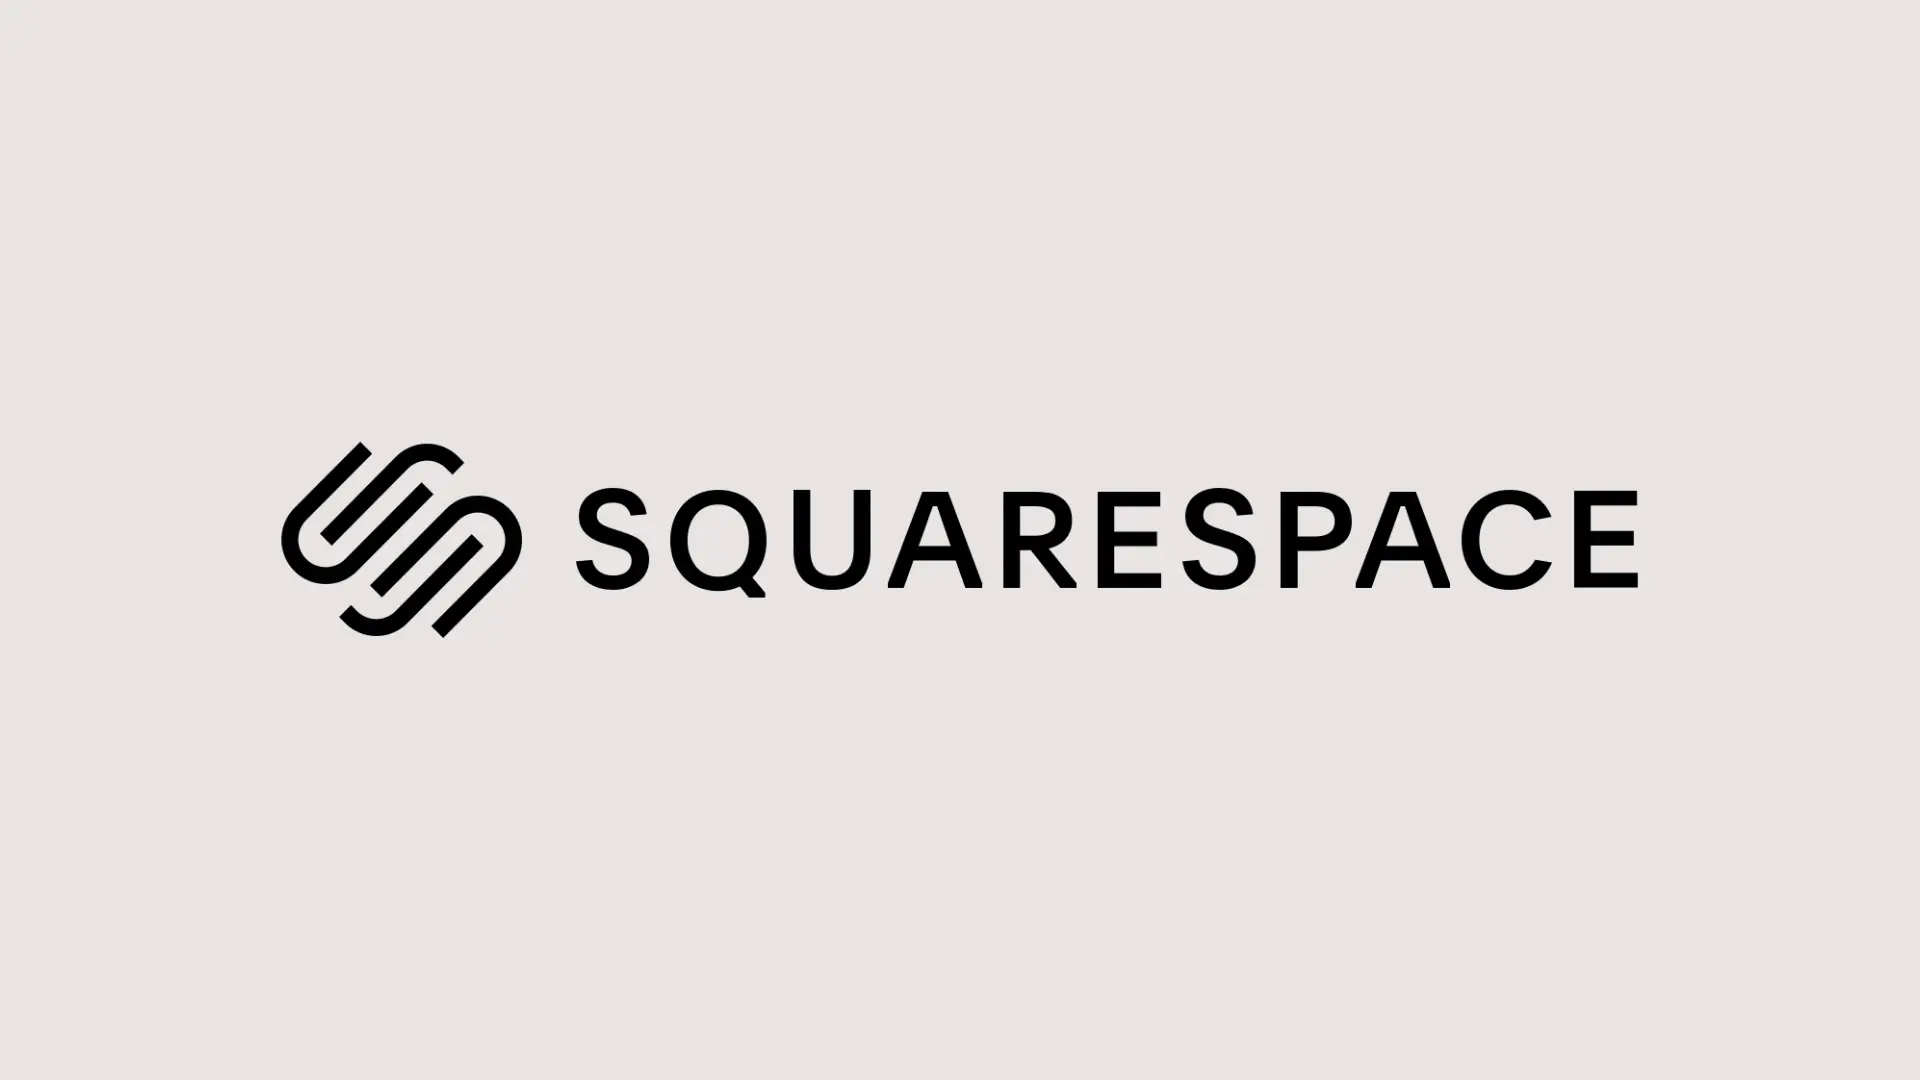 Squarespace brand